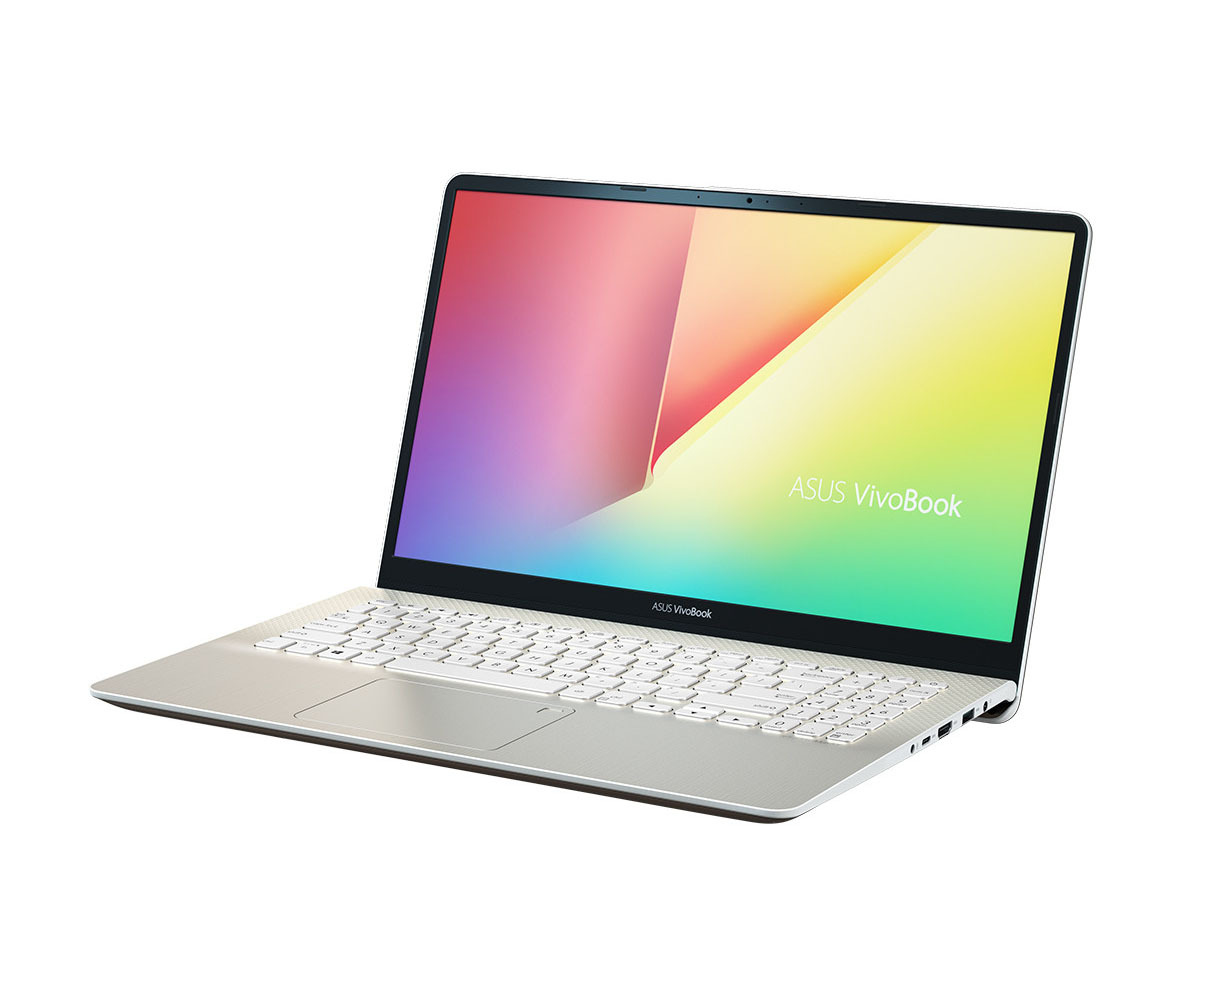 Laptop Asus S530FN-BQ283T - Intel Core i7-8565U, 8GB RAM, SSD 512GB, Nvidia GeForce MX150 2GB GDDR5, 15.6 inch